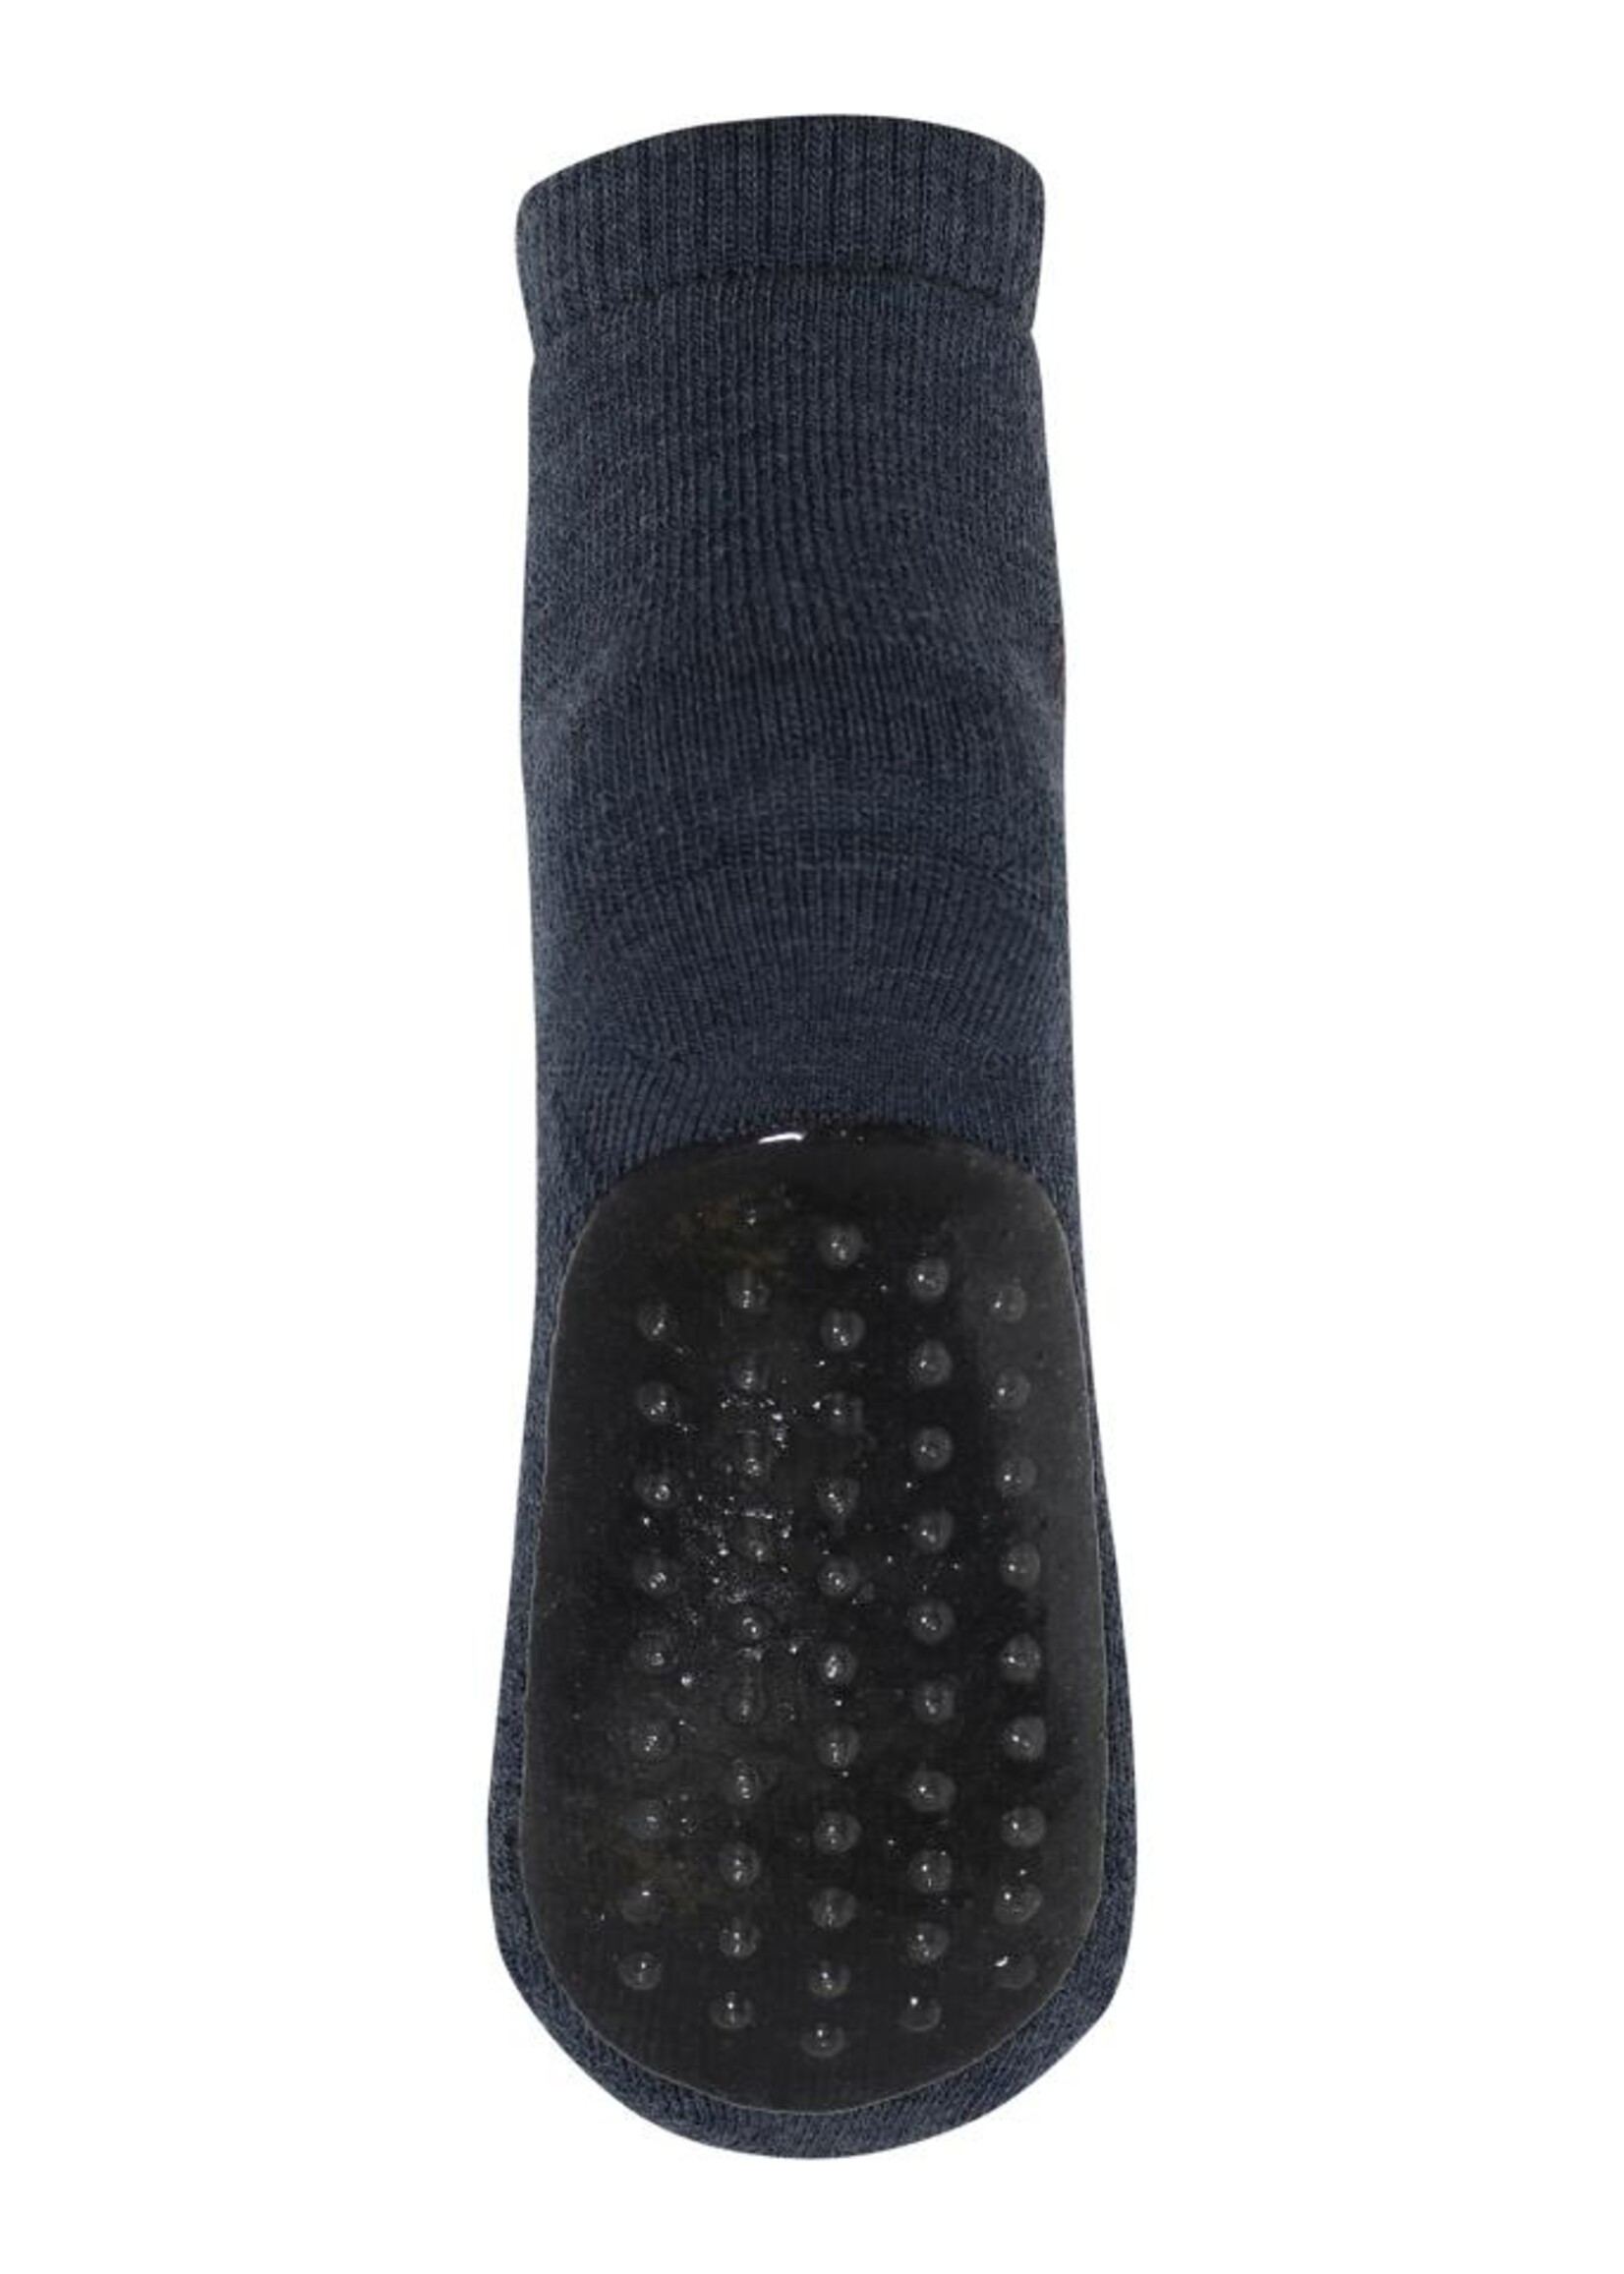 MP Denmark MP Denmark | Wool socks anti slip - Dark Denim Melange col 498